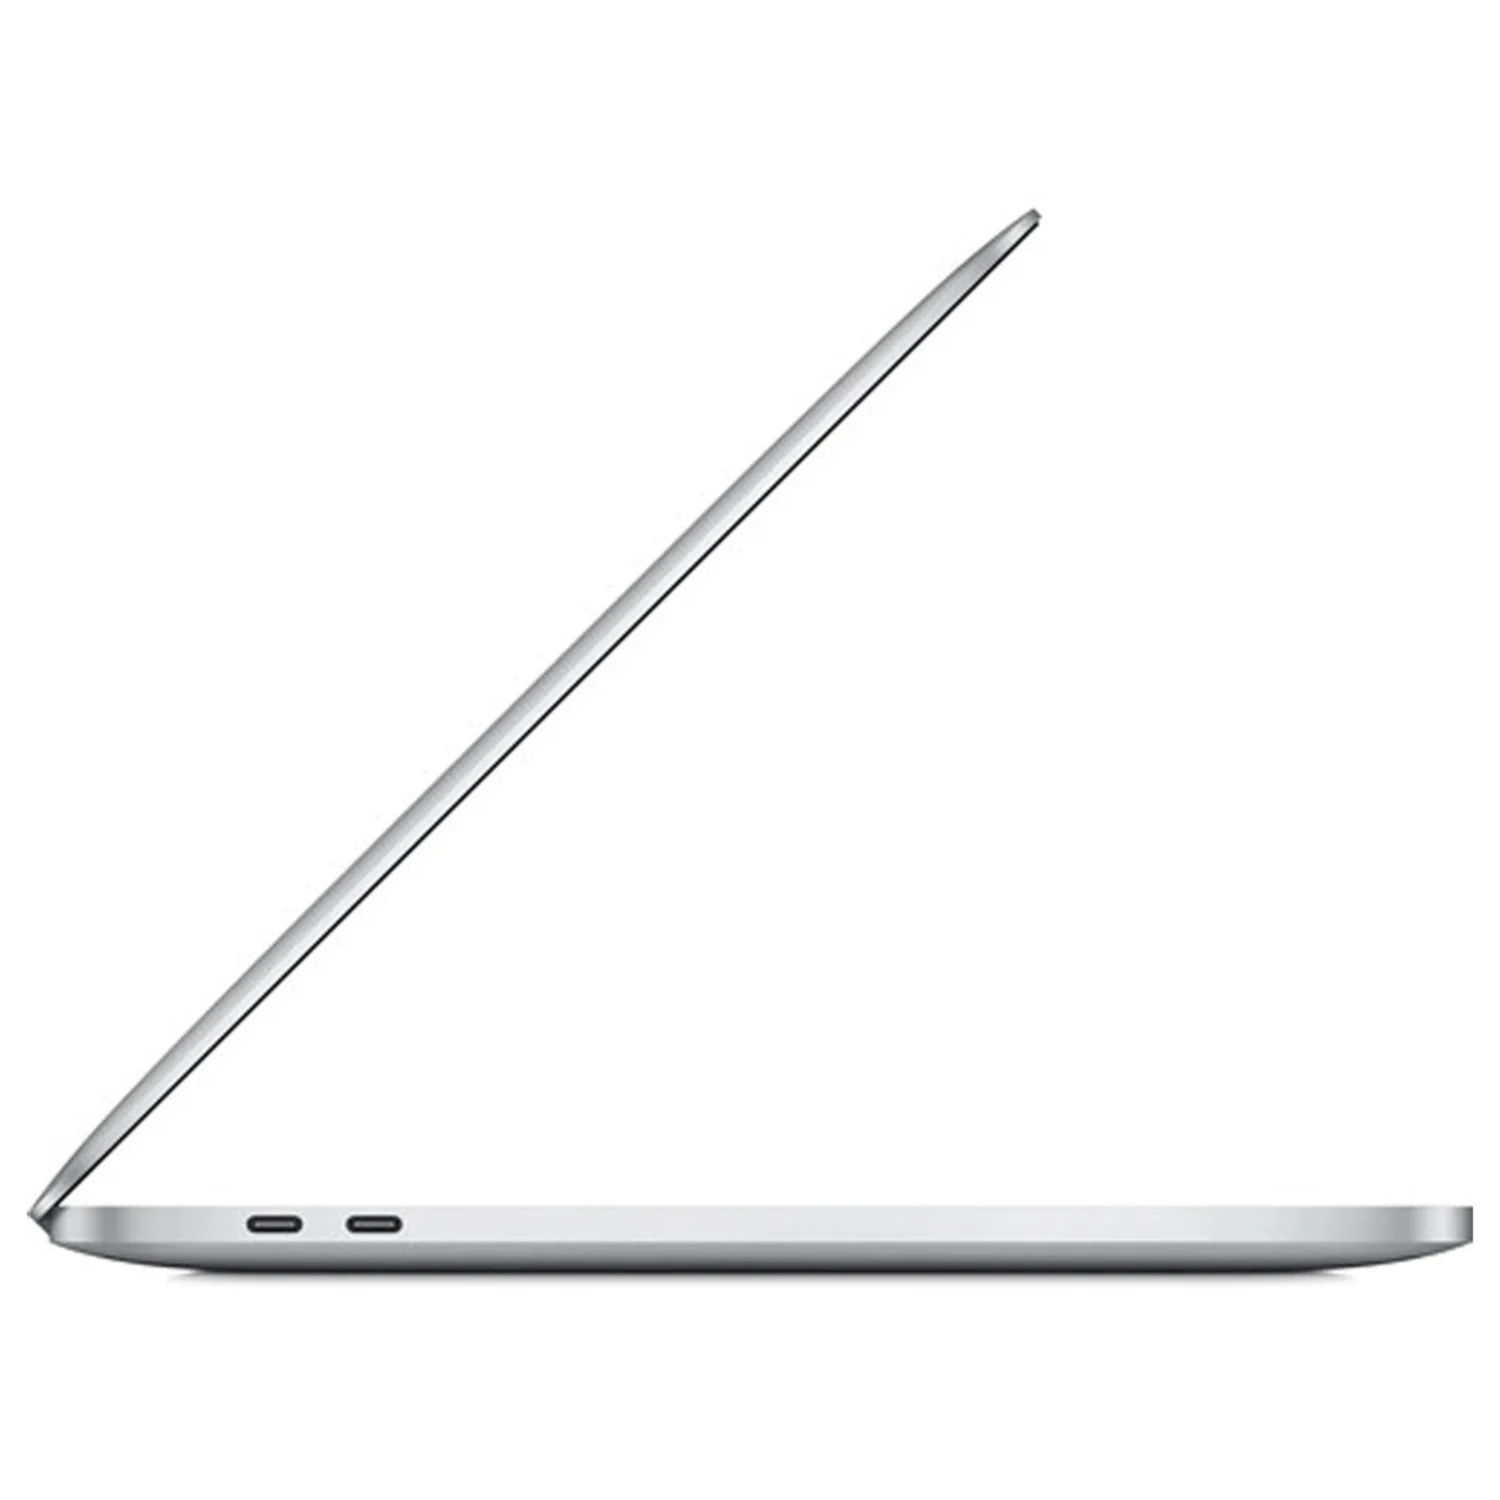 Apple Macbook Pro MYDC2LL/A M1 / Memória RAM 8GB / SSD 512GB / Tela 13.3" - Silver (2020)